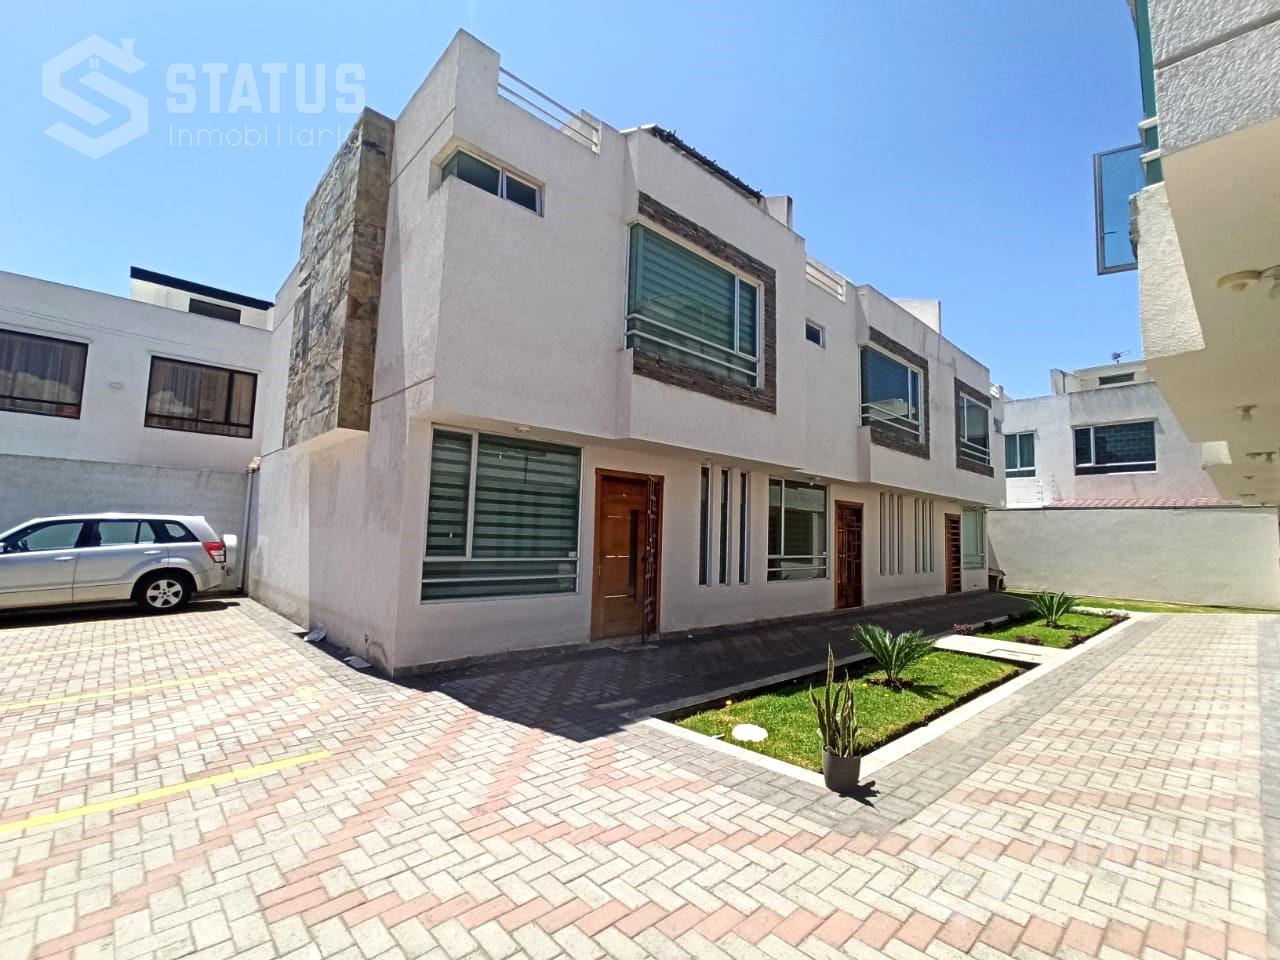 Vendo casa en Conjunto 160m, 3 Dorm., 1 Garaje, San Nicolás de las Abras - Riobamba, $79.900